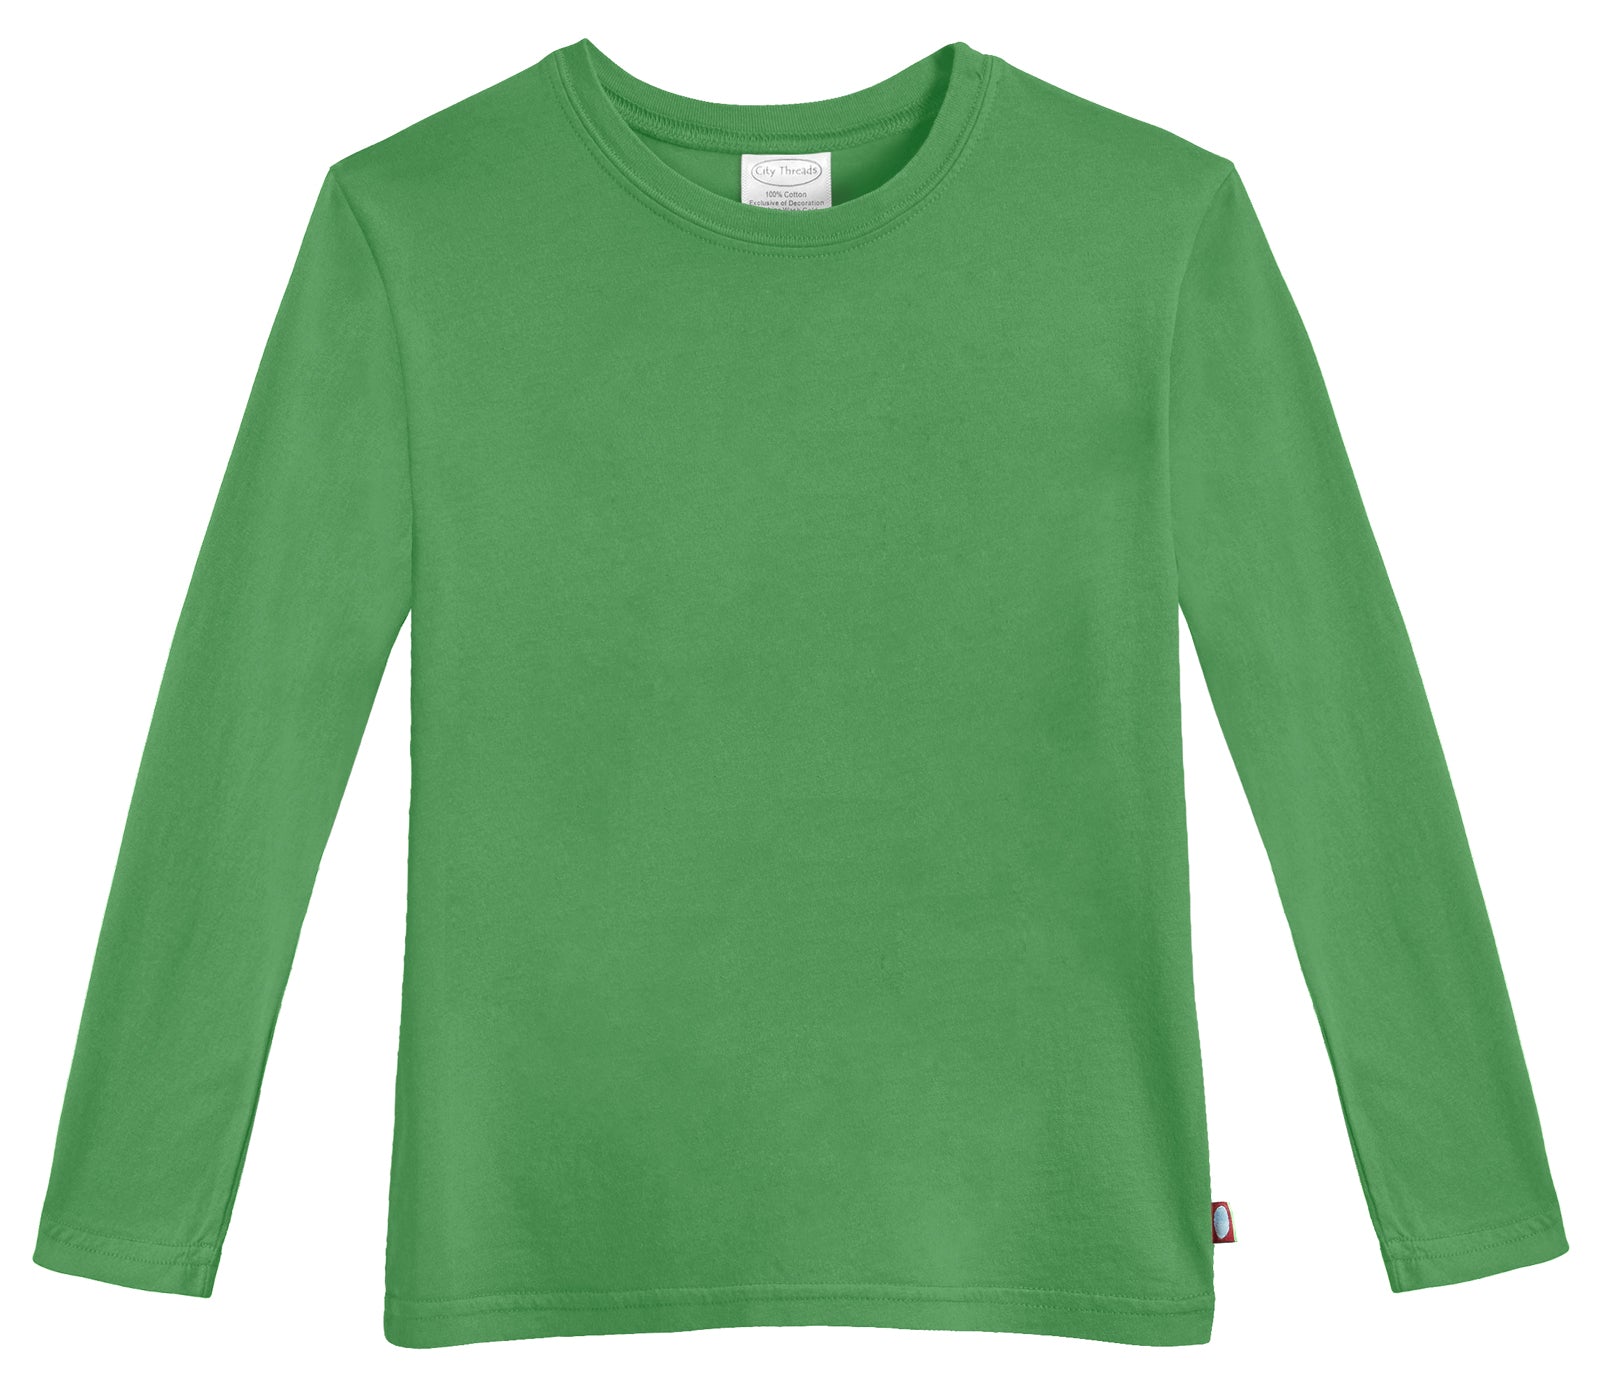 Kid's T-Shirt Green Cotton Jersey